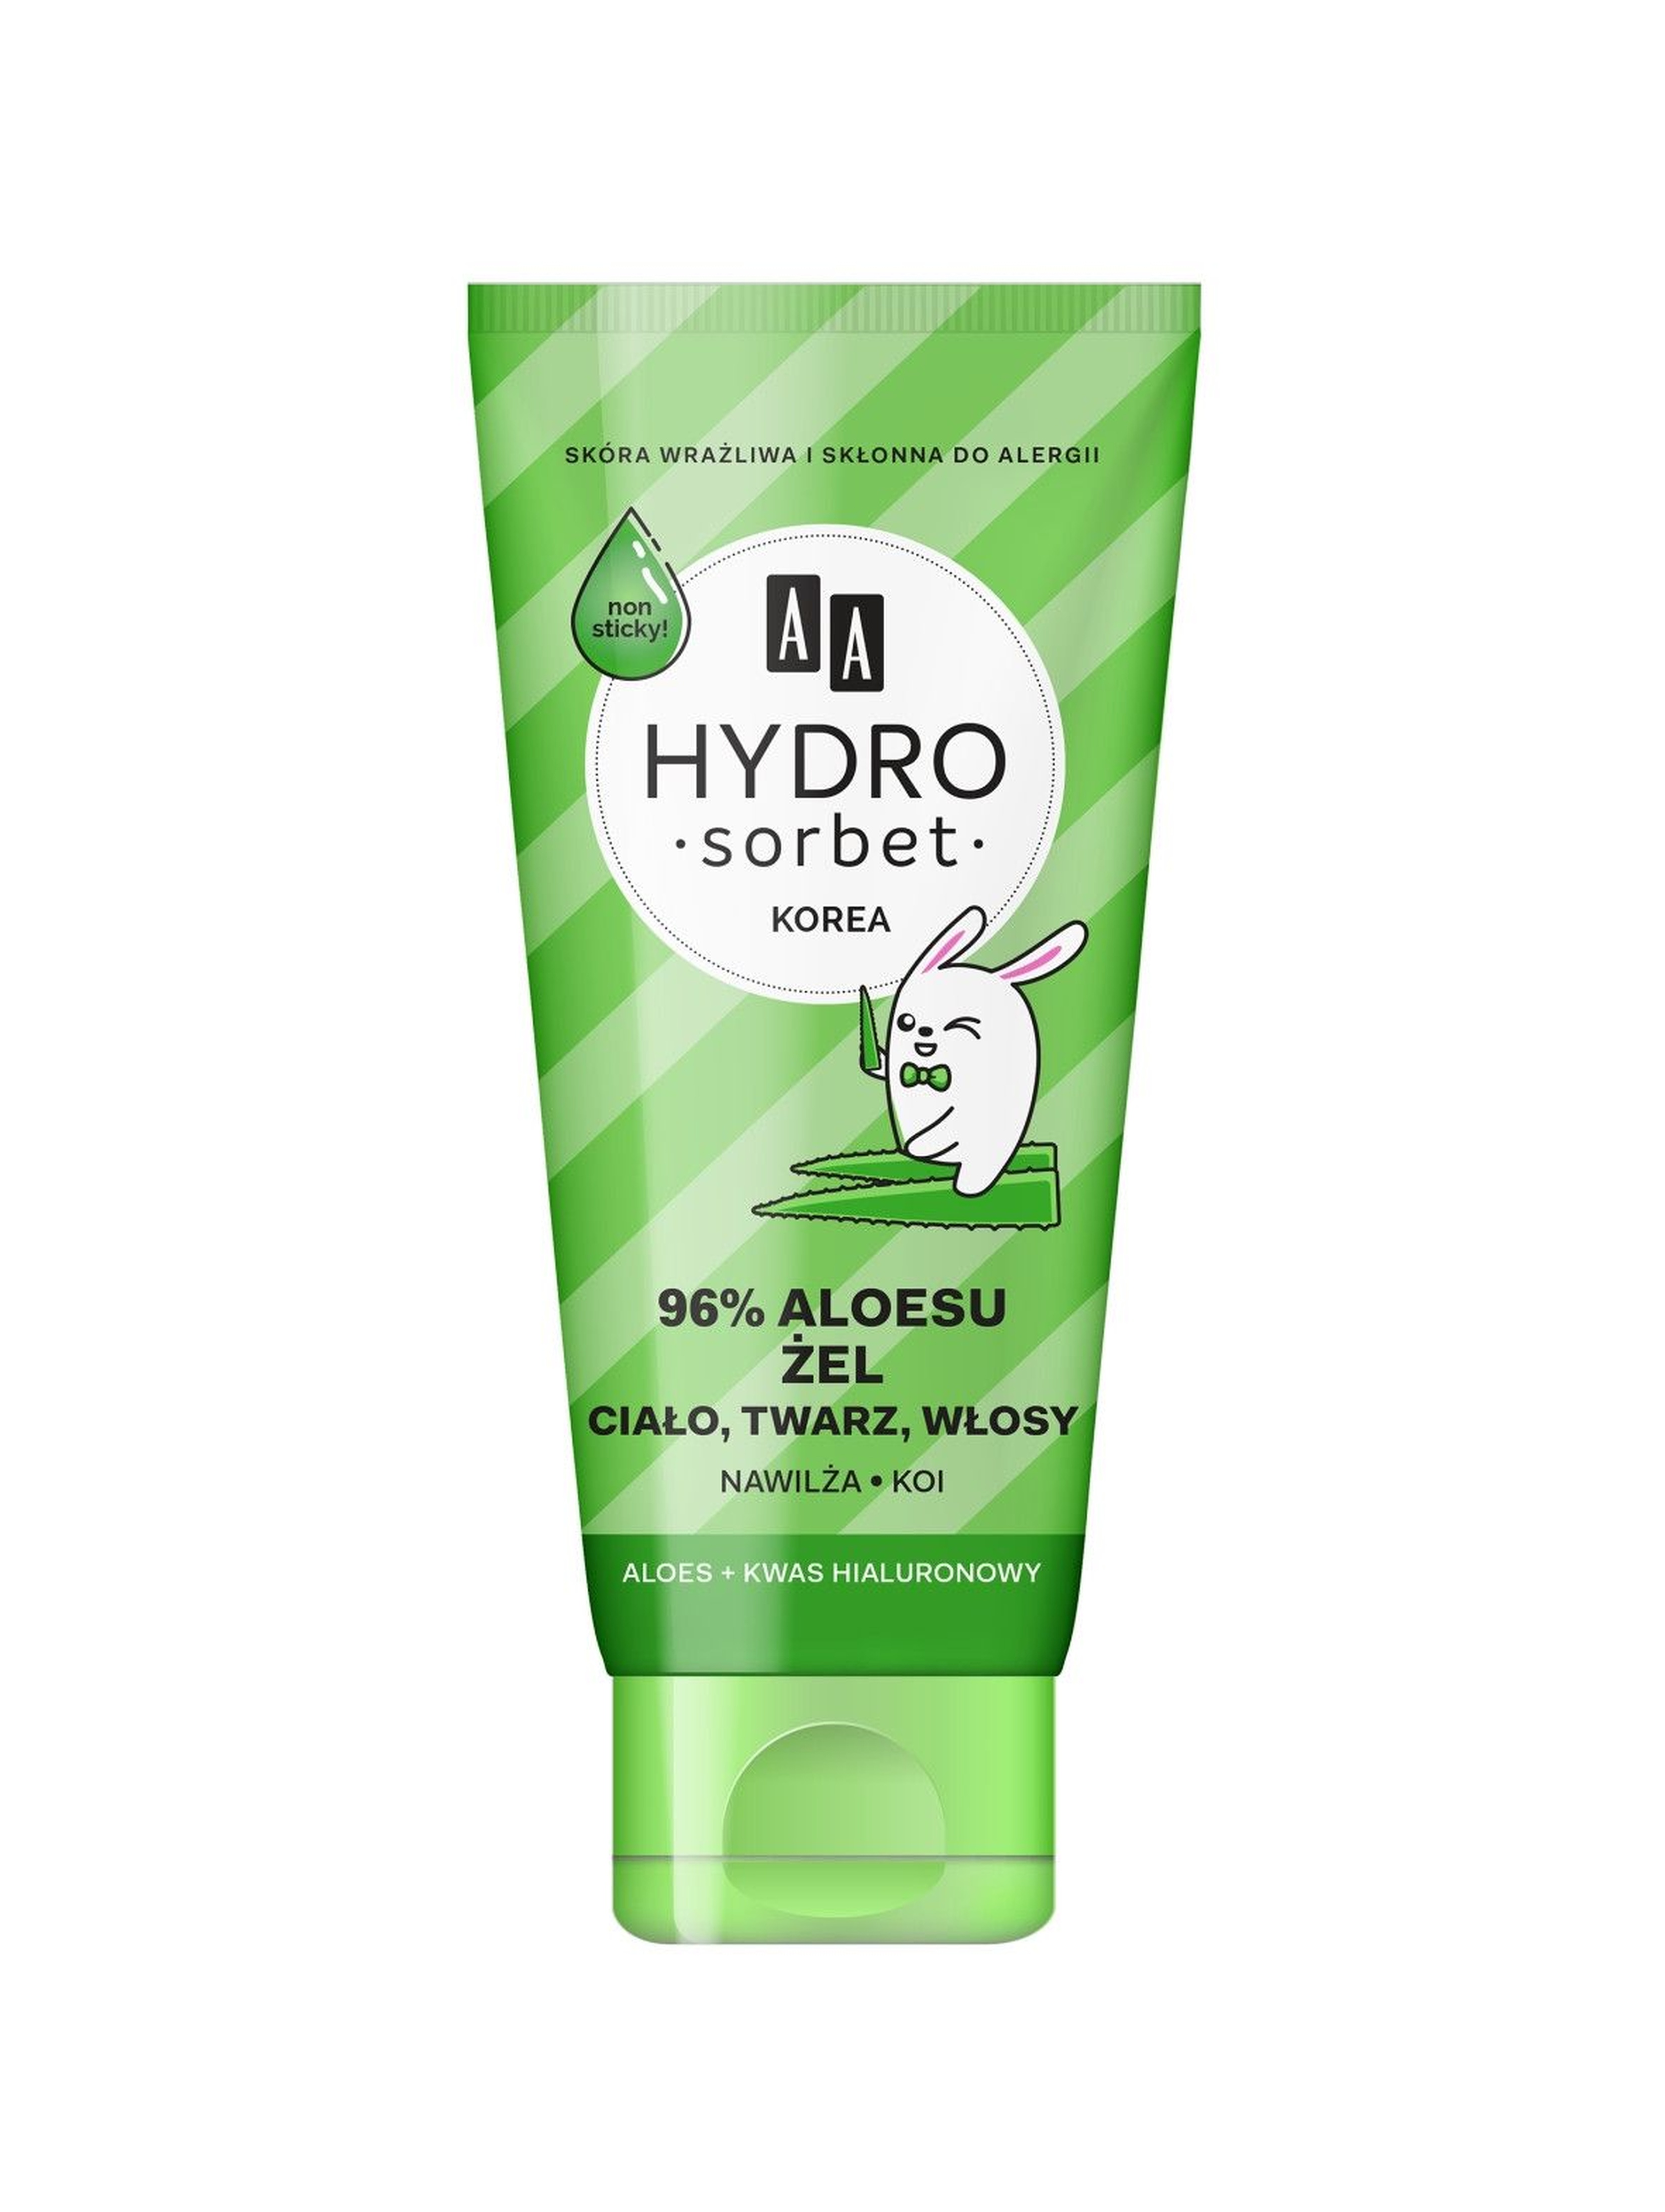 AA Hydro Sorbet żel do ciała, twarzy i włosów 96% aloesu 200 ml